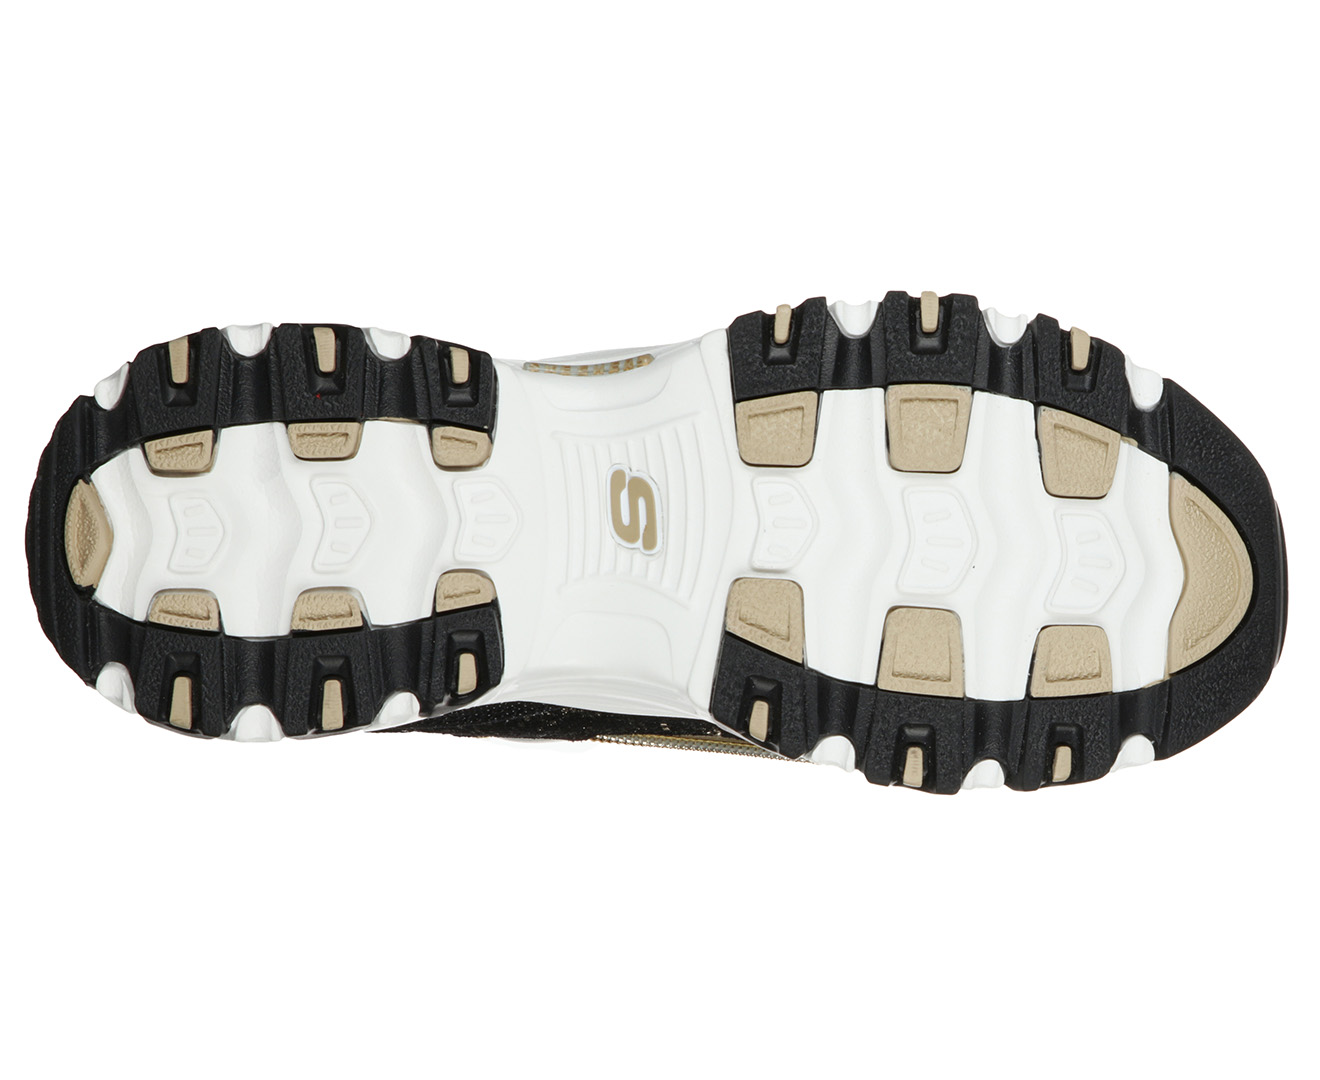 Skechers Womens' Premium Heritage D'Lites 3.0 Sparkling Lady Shoes - Black/Gold | Catch.com.au